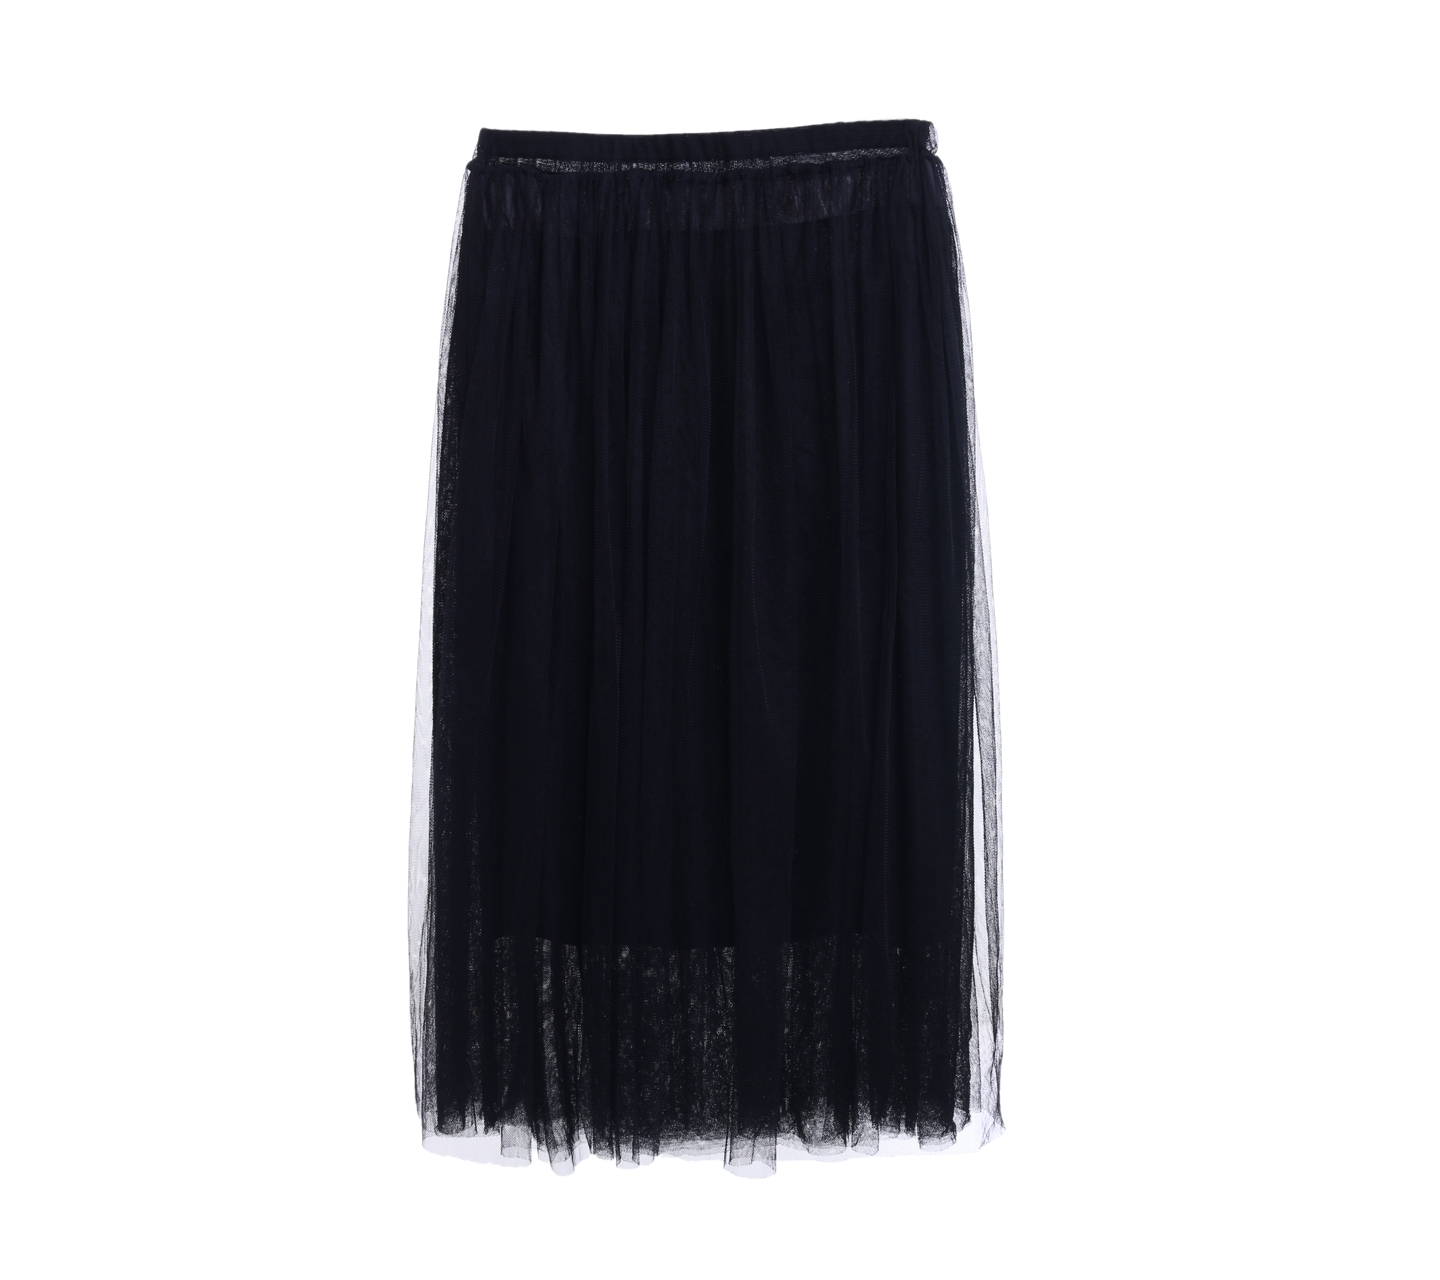 J.REP Black Tulle Midi Skirt